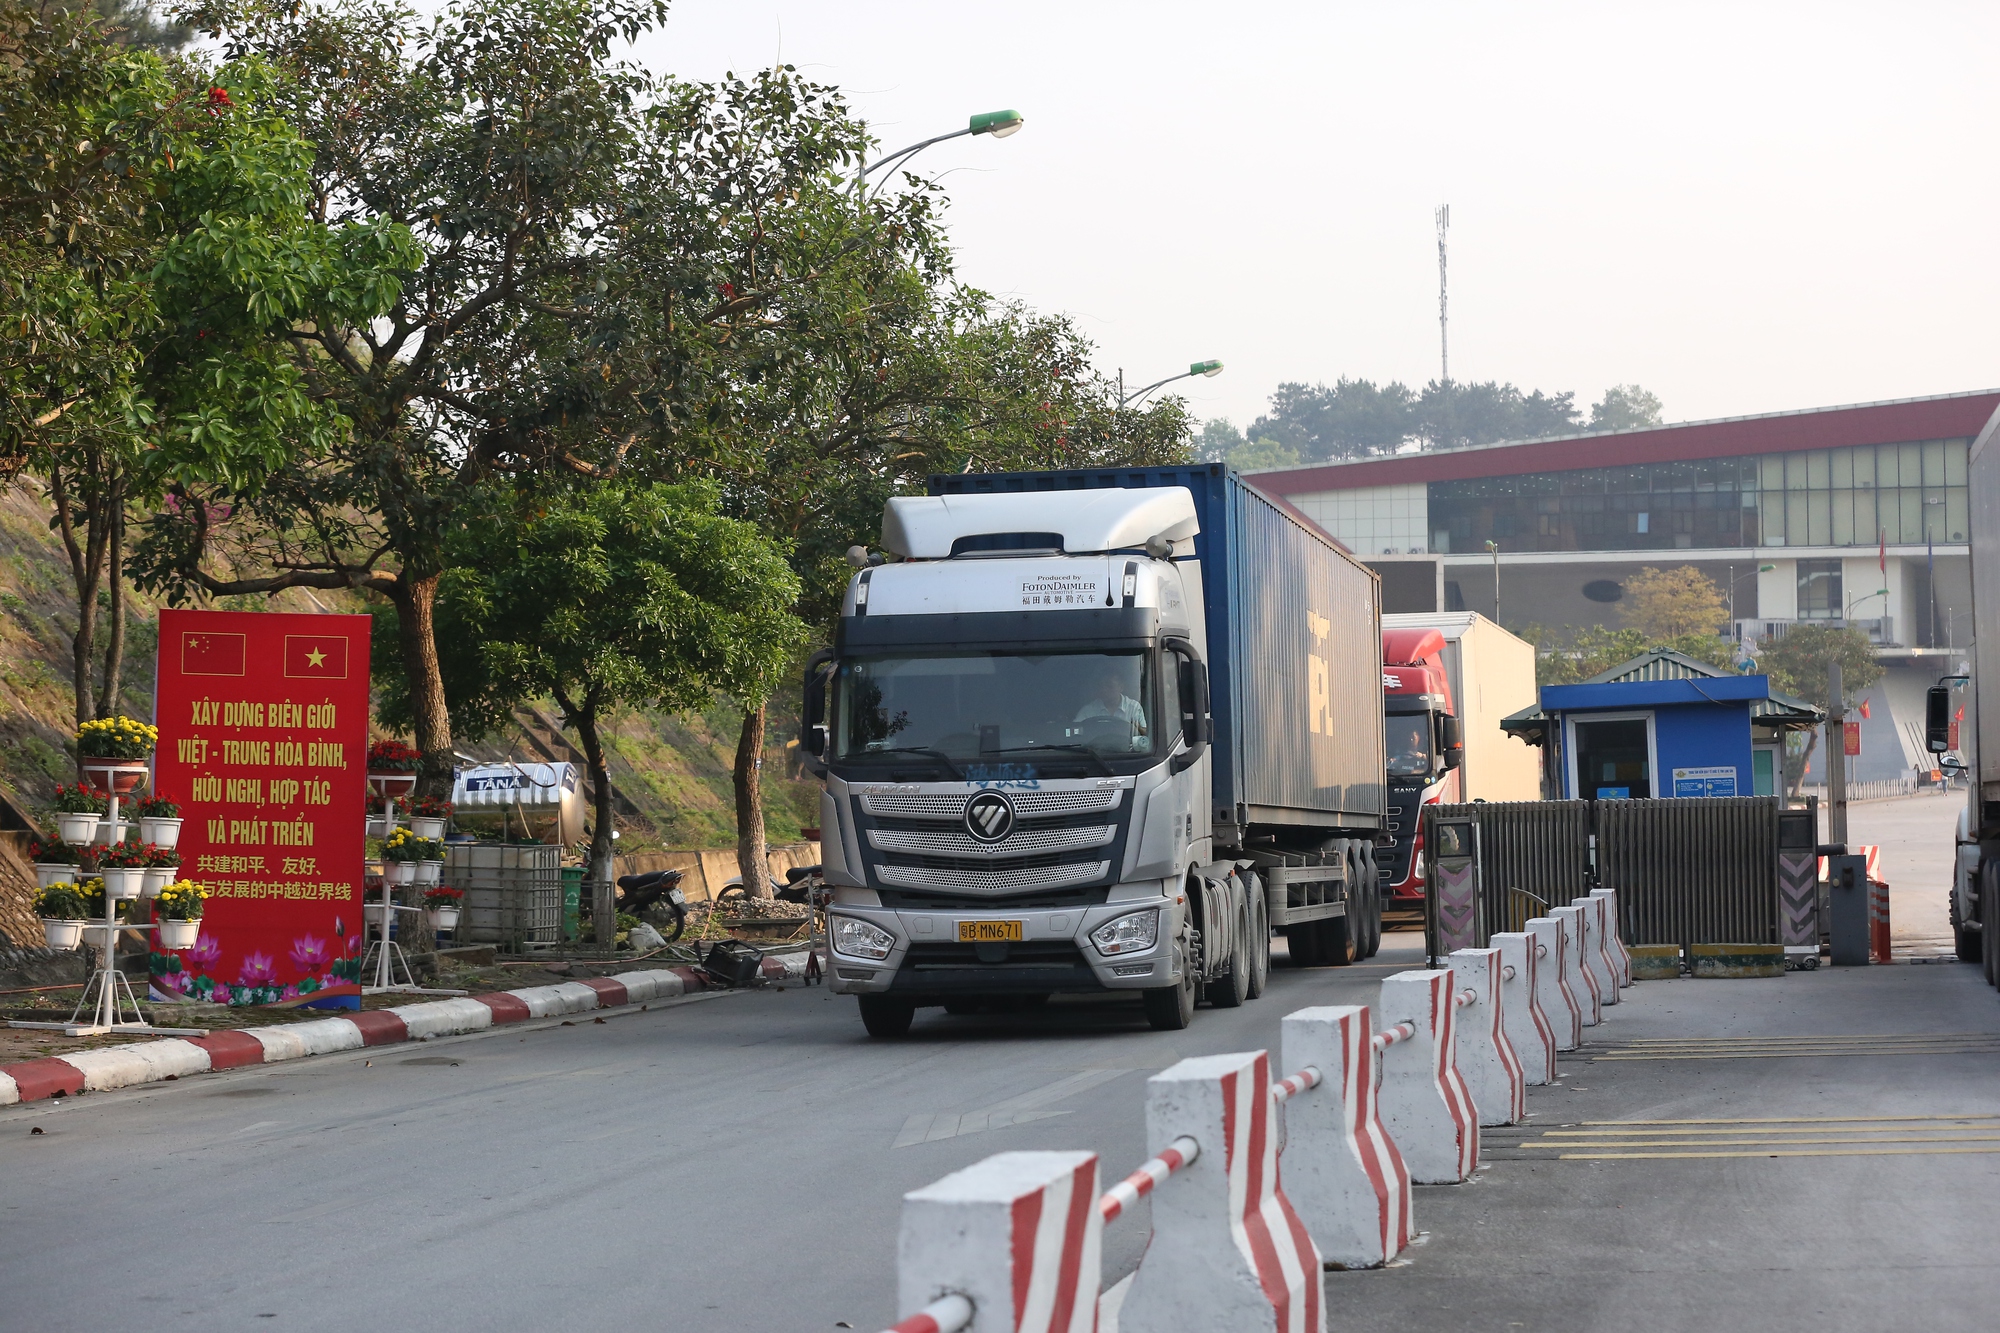  Bài 2: Thương mại biên giới Việt-Trung: Kỳ vọng bước chuyển 'cửa khẩu số' - Ảnh 1.